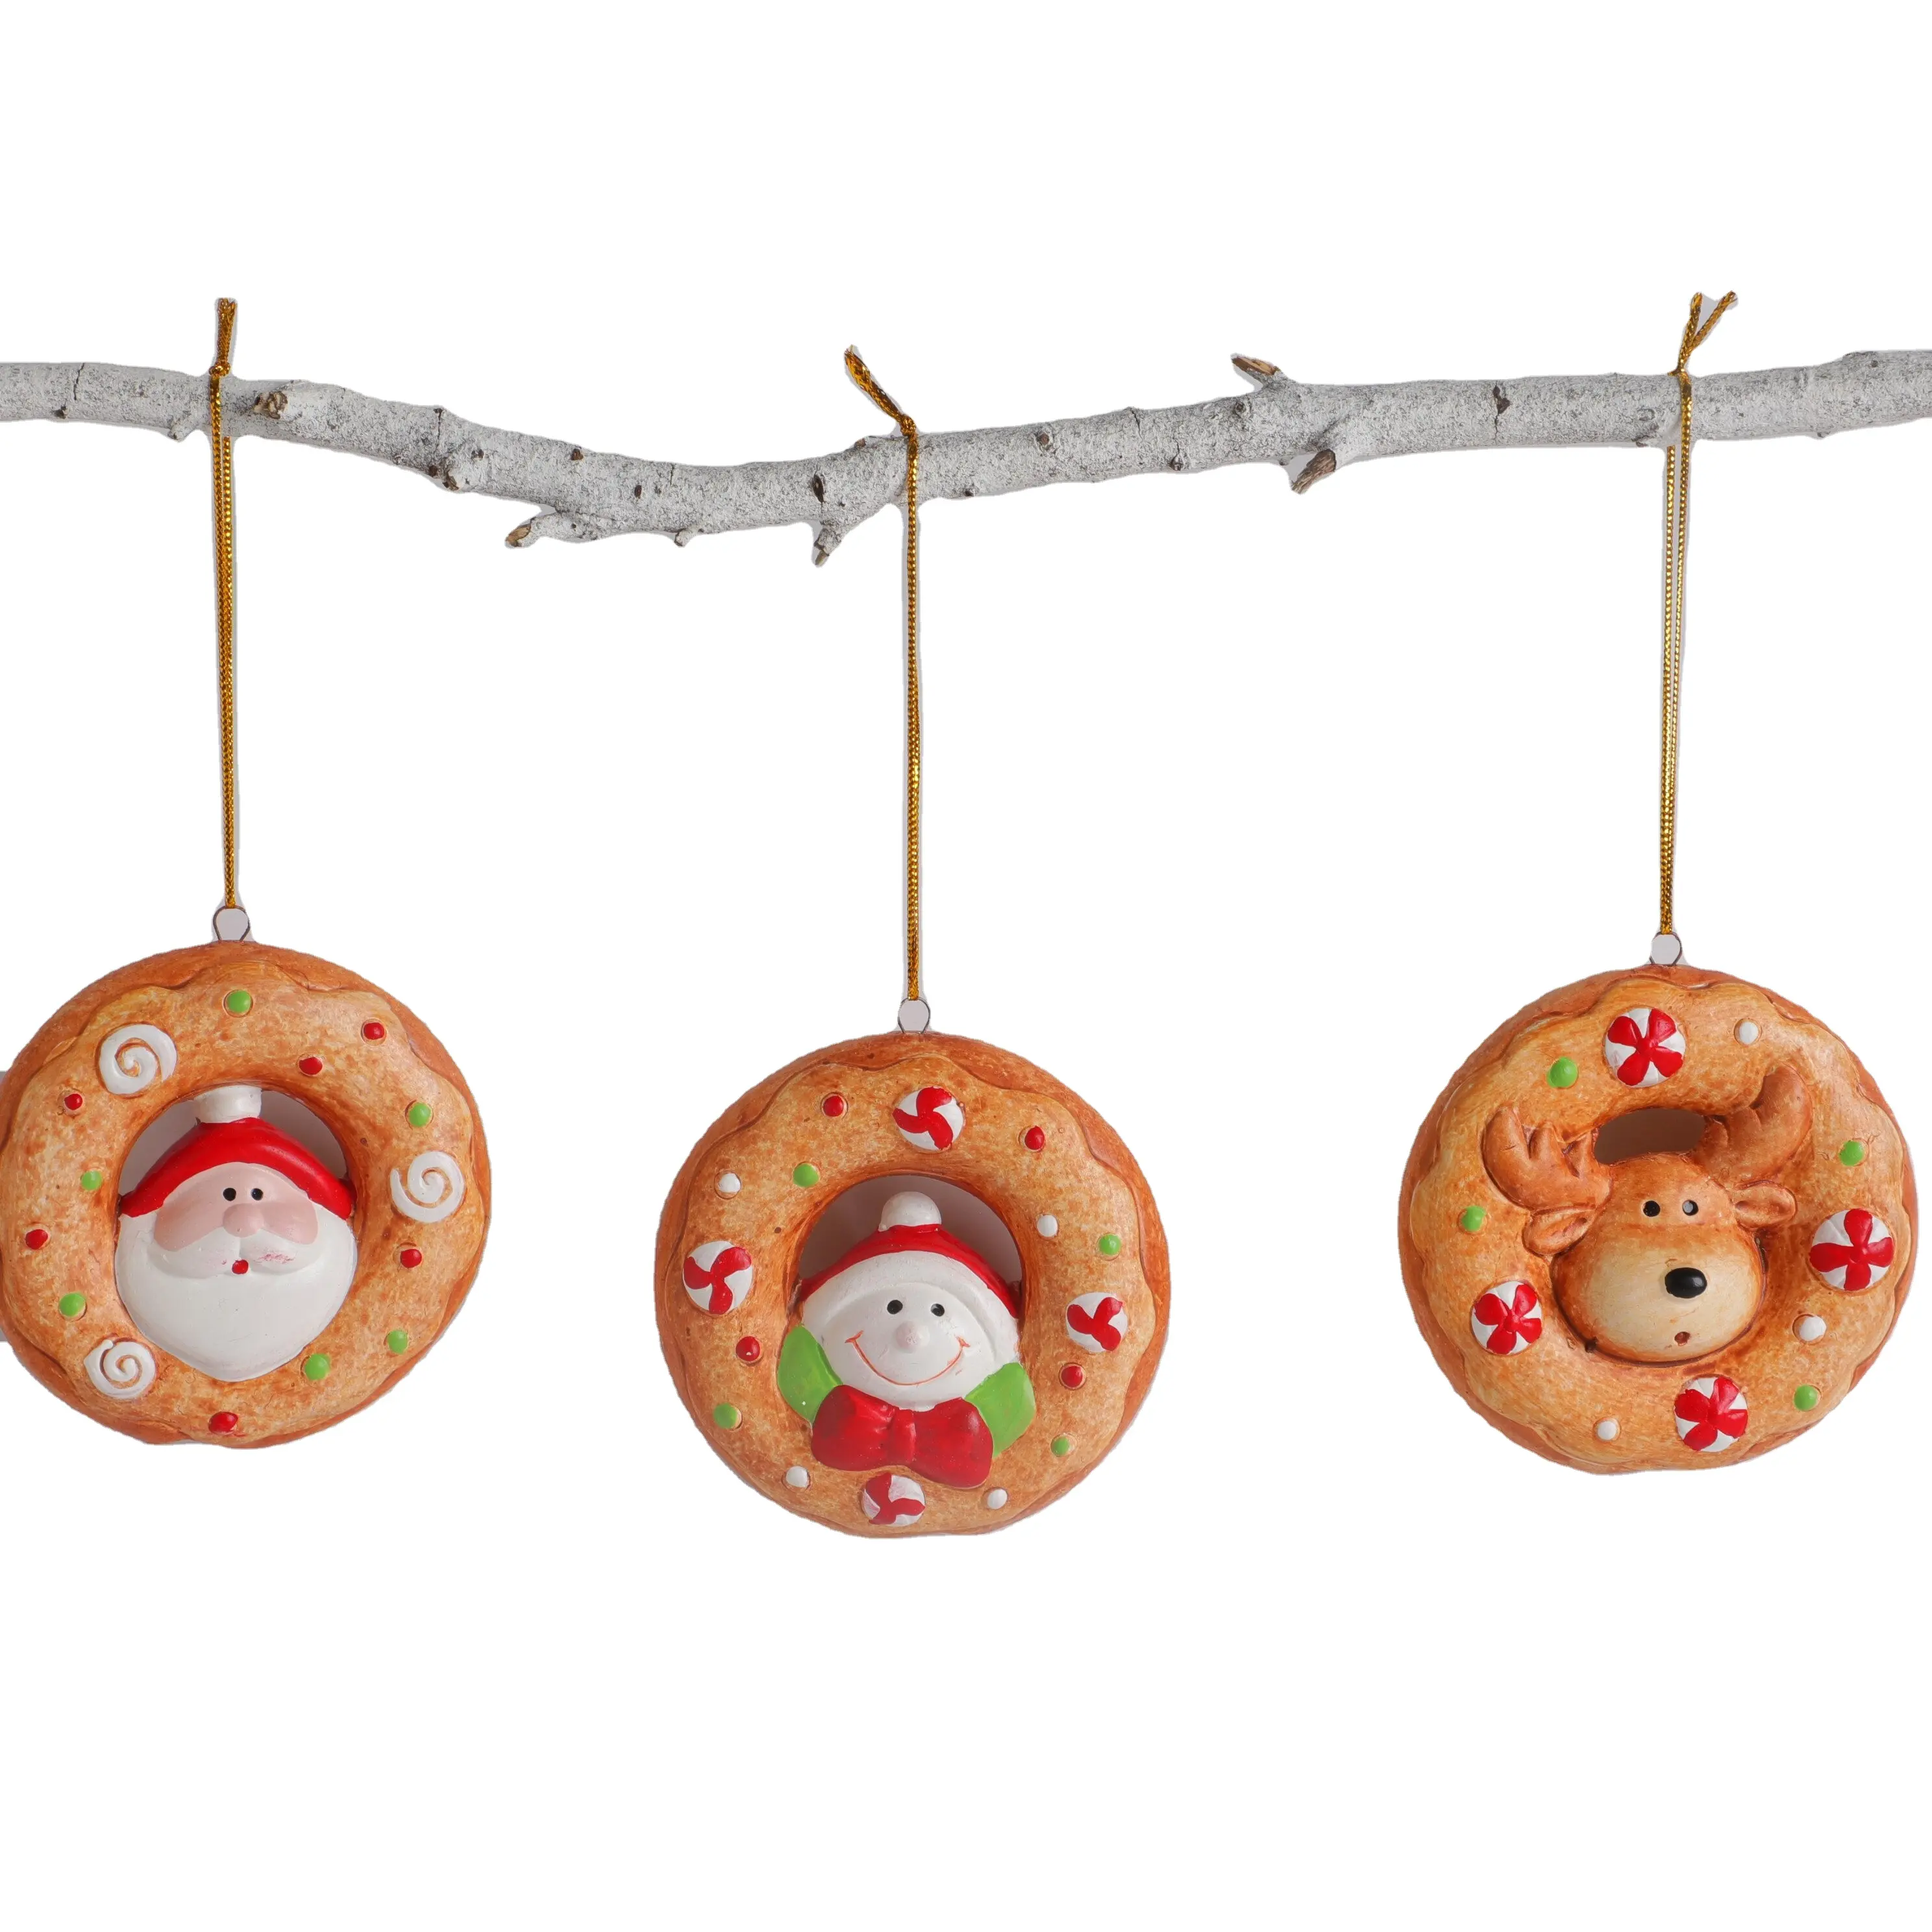 "Donut Candy Kleurrijke Deur Opknoping Etalage Xmas Decoraties | Keramische Kerstversiering Voor Feestelijke Cheer